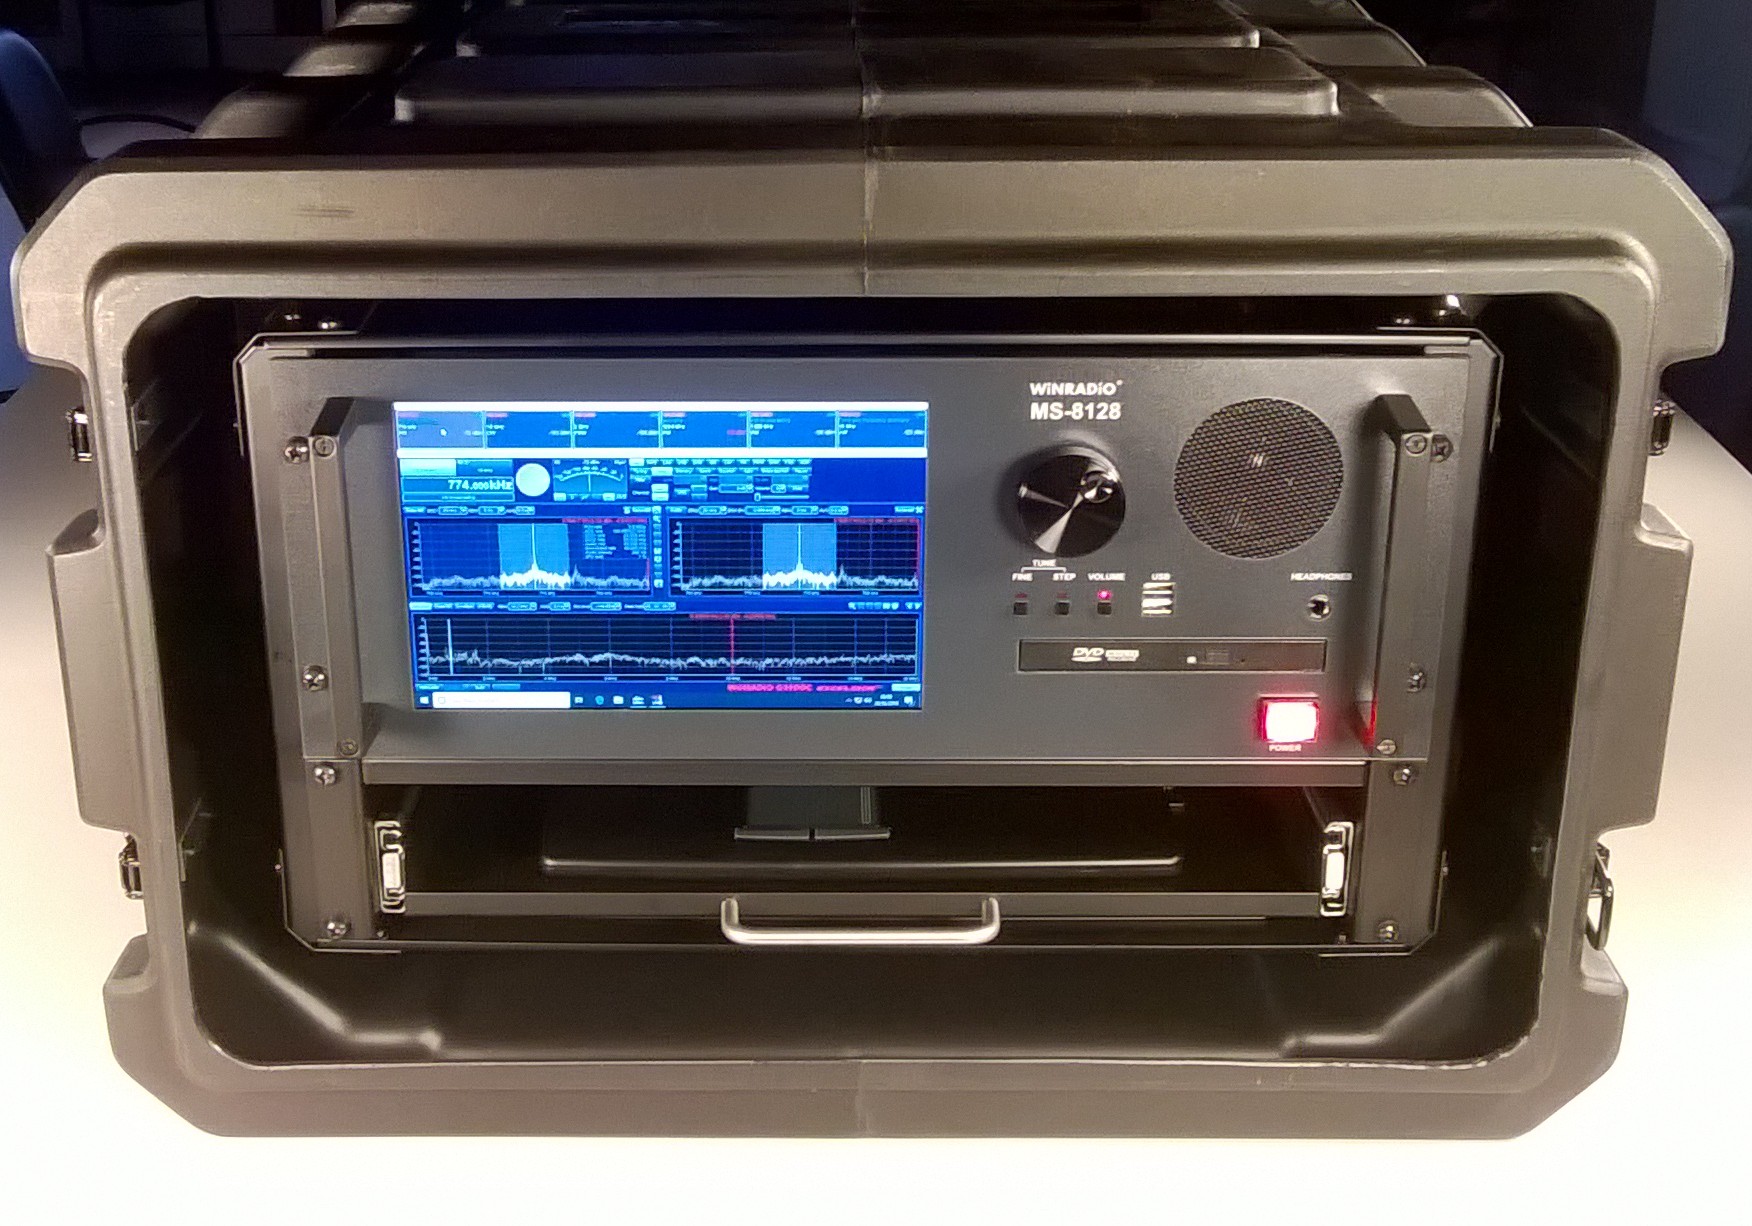 Radio receptor digital multibanda MX-RDM938